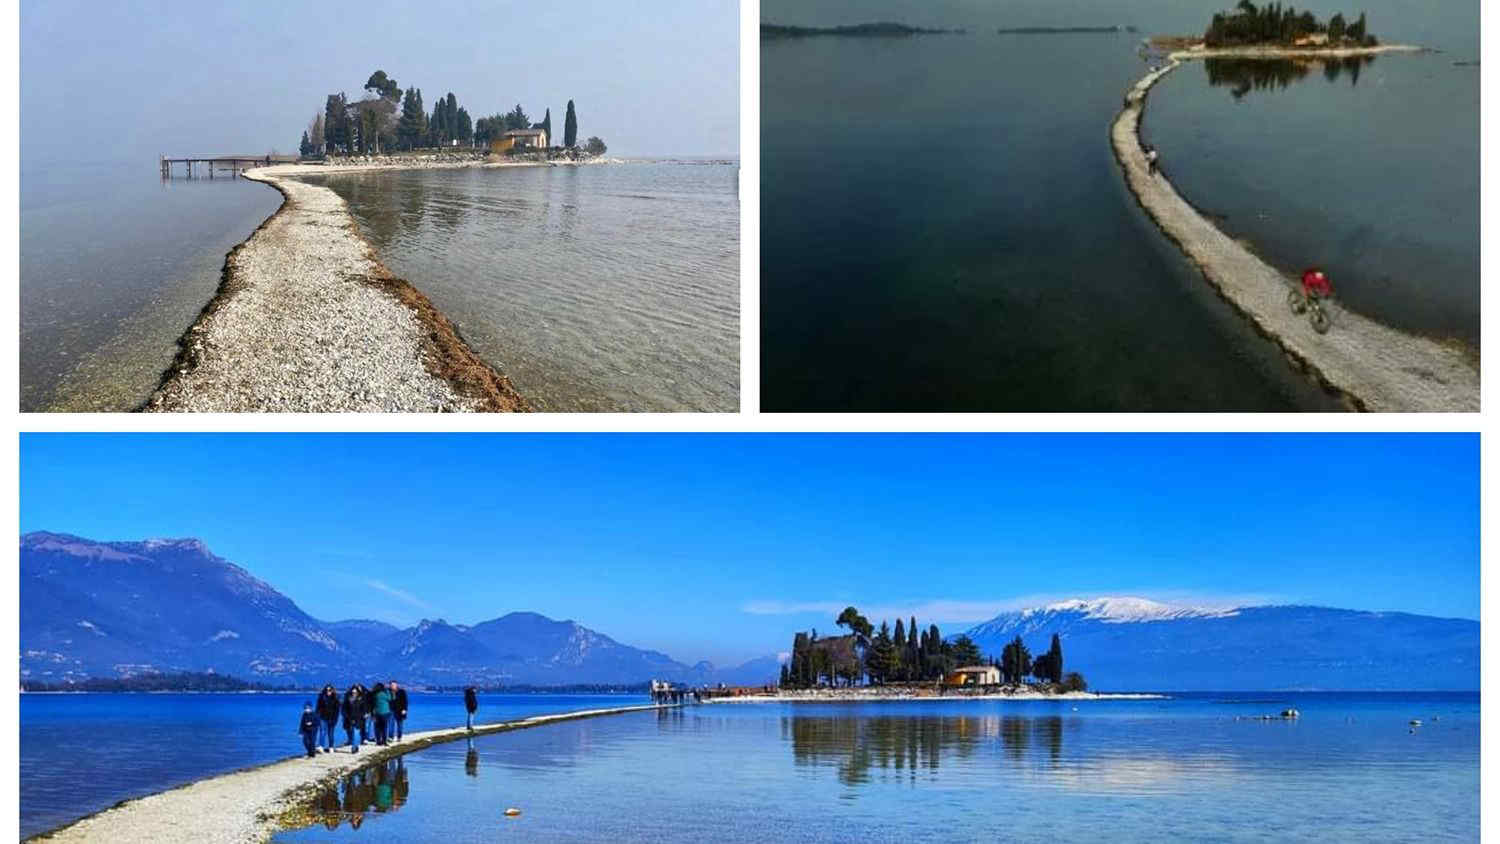 Siccità Lago di Garda, livello dell'acqua mai così basso: riaffiora l'istmo dell'Isola di San Biagio (Isola dei Conigli) - Foto e video